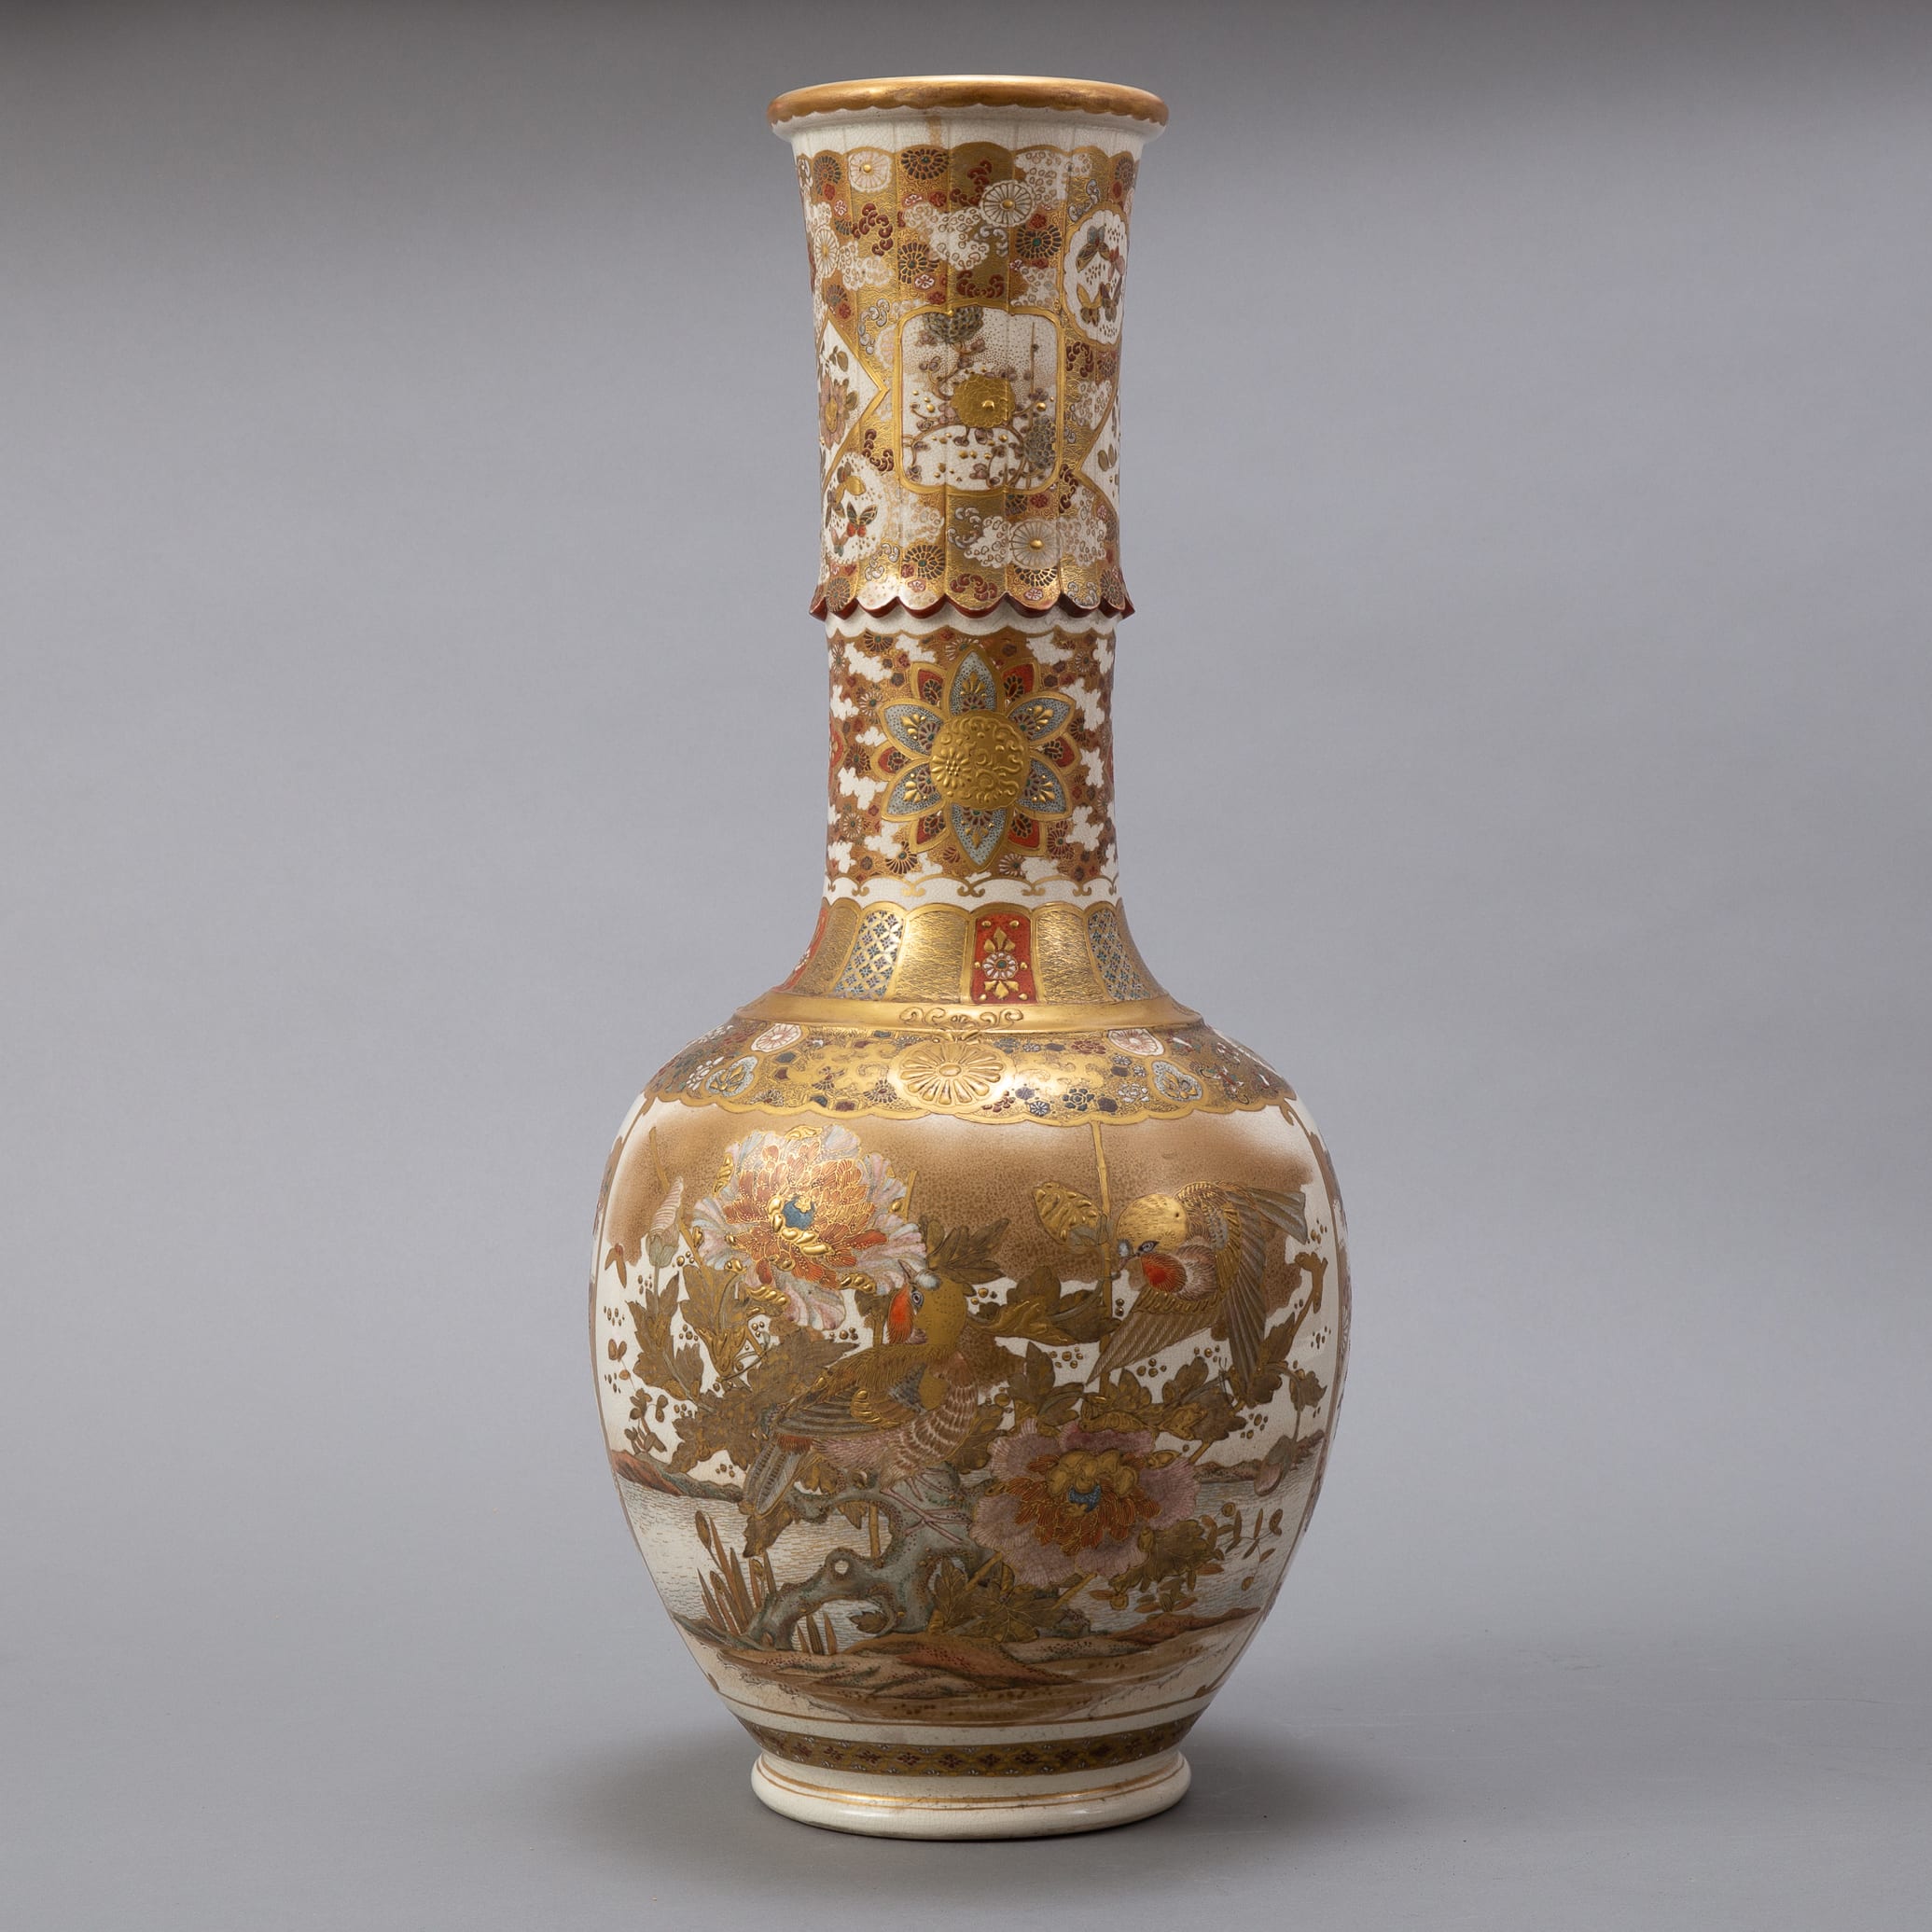 Lot 043: Large Japanese Meiji Period Satsuma Vase